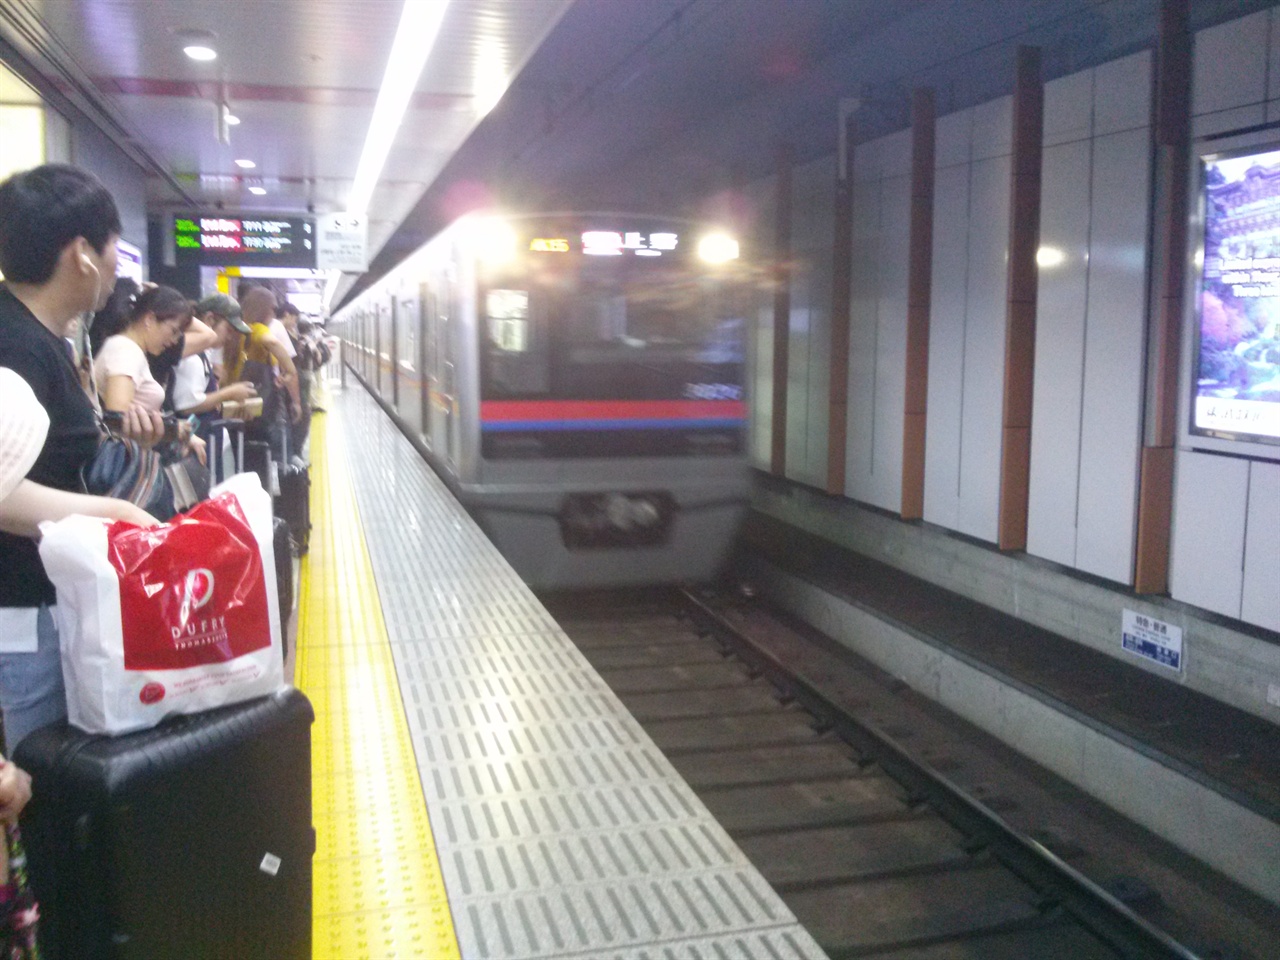 게이세이 특급 전철은 한국 지하철과 차이가 없다. 차이점이라면 승객과 전철 사이에 스크린 도어가 없다는 것이다.